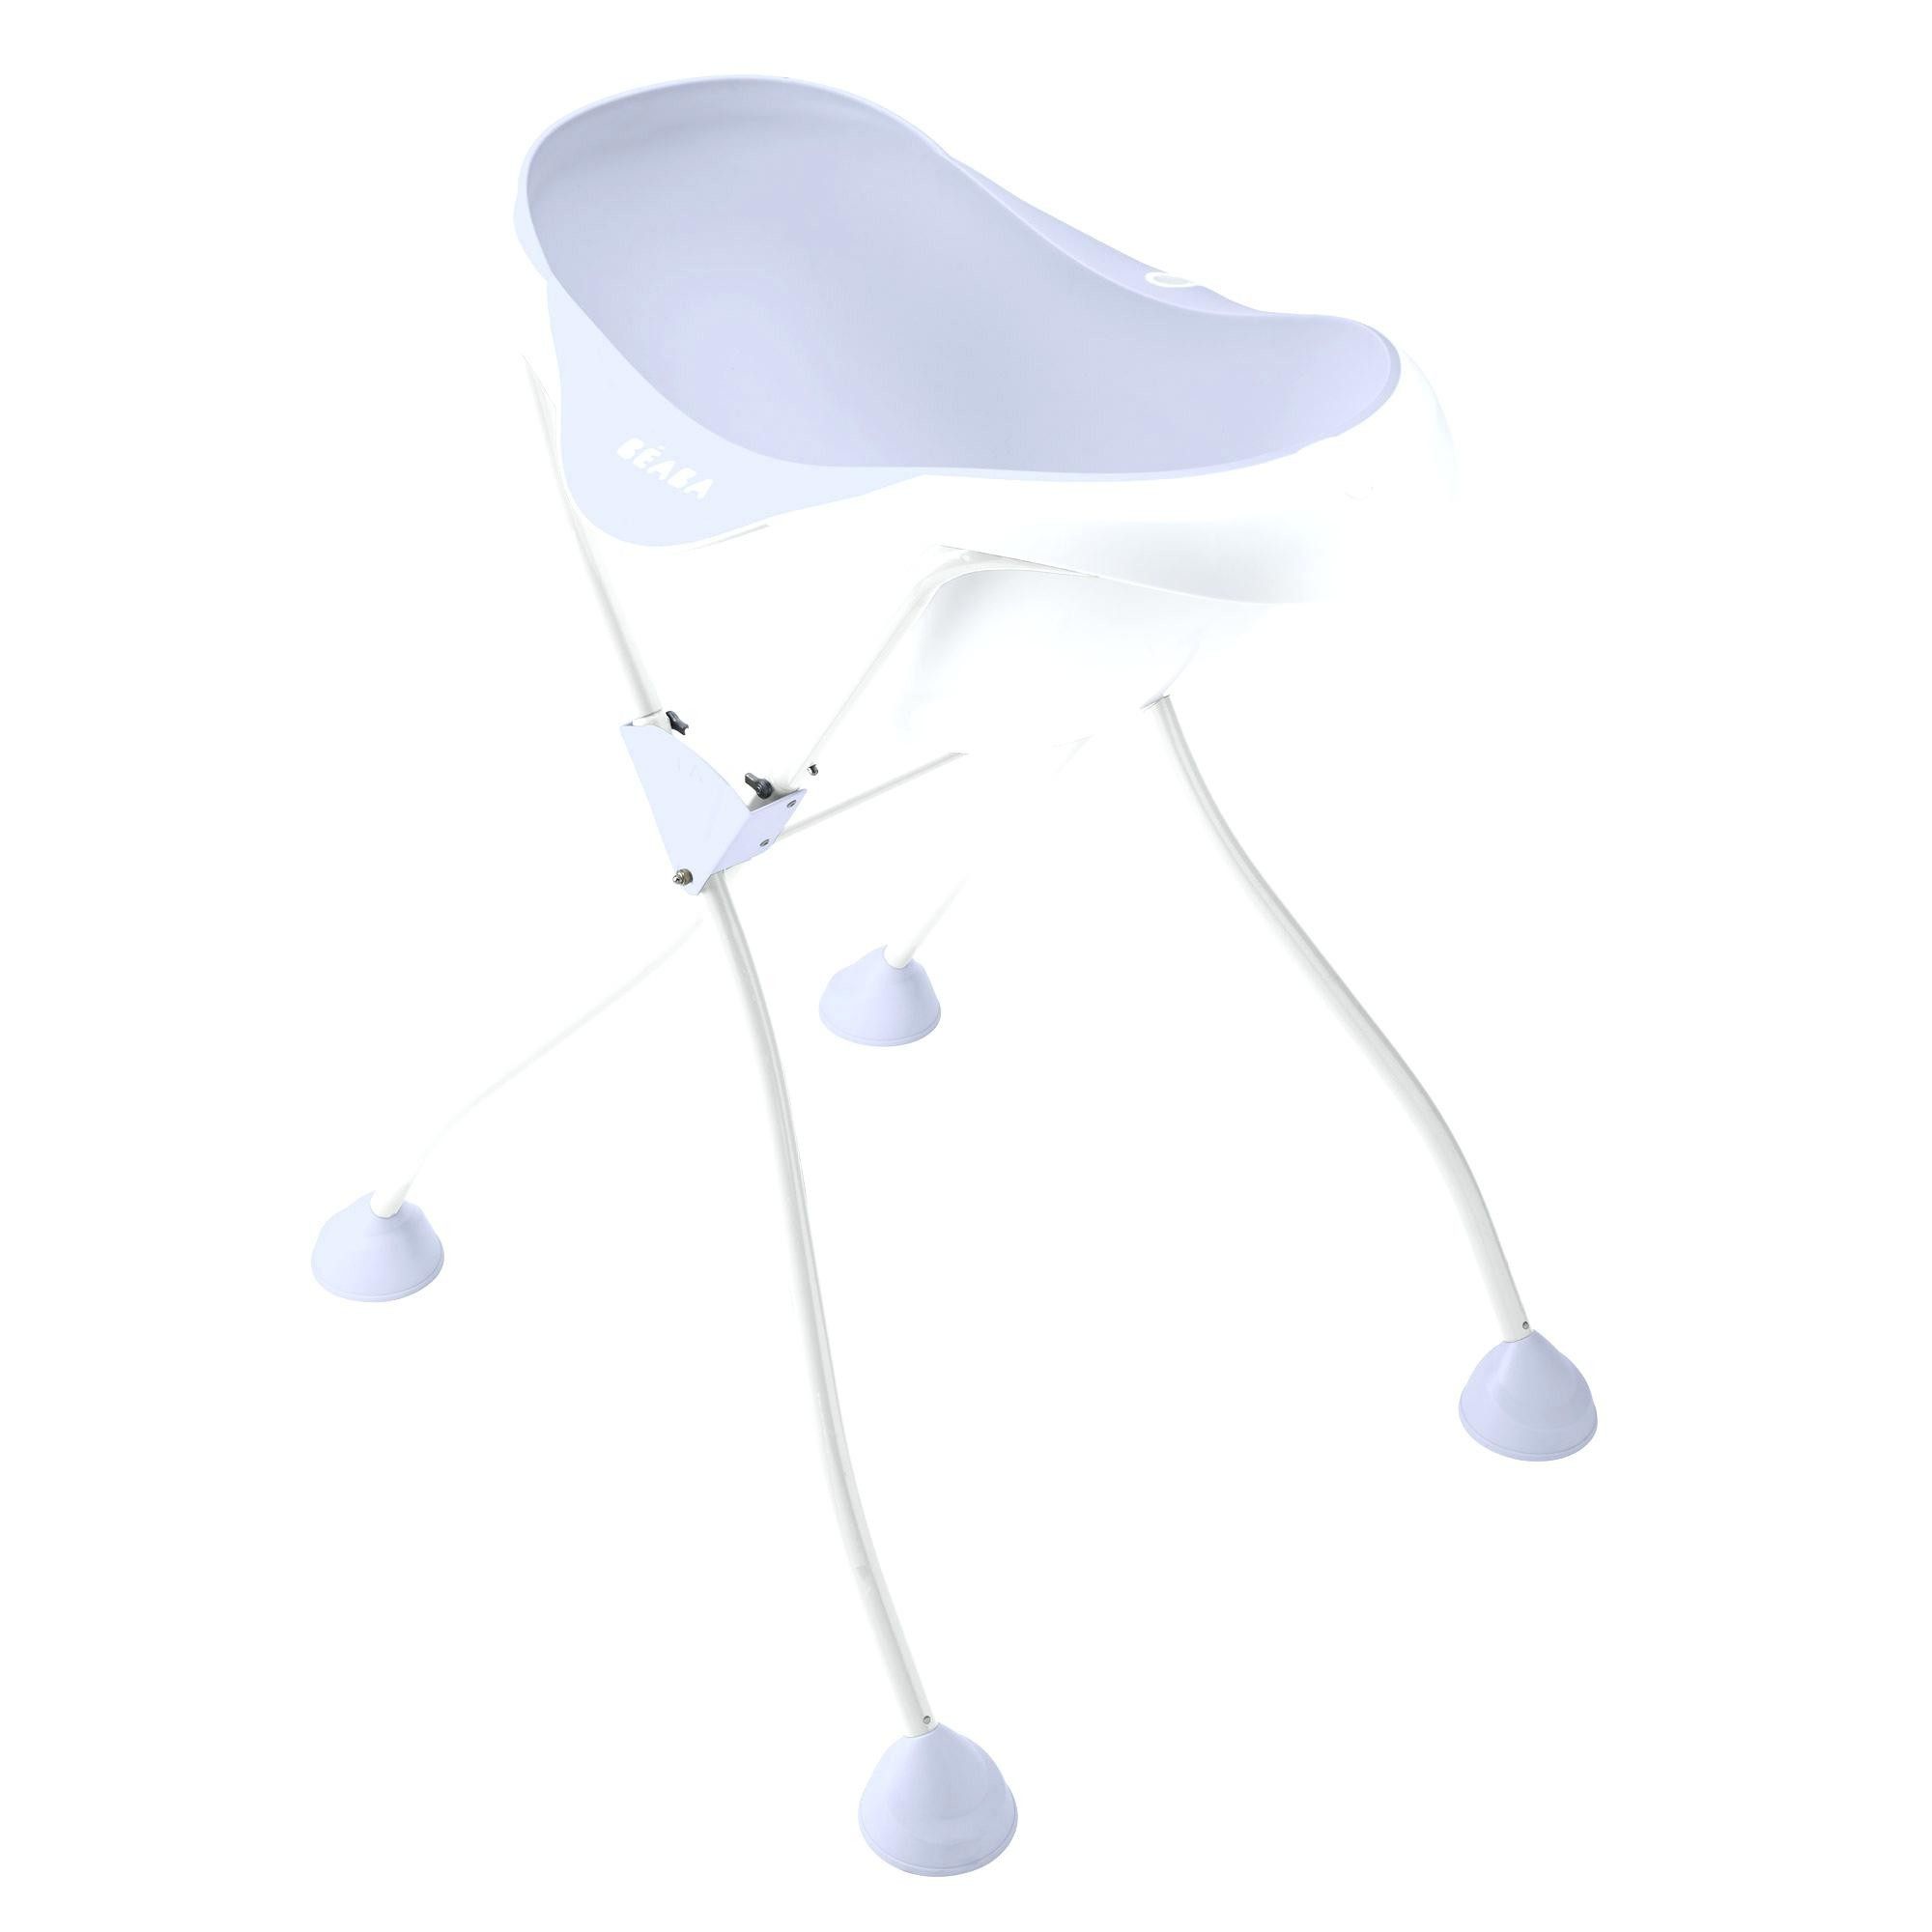 Lit Superposé Pour Bébé De Luxe Chaise Bébé Pliante Cuisine Pour Bebe Lovely Lit Ikea Bebe 12